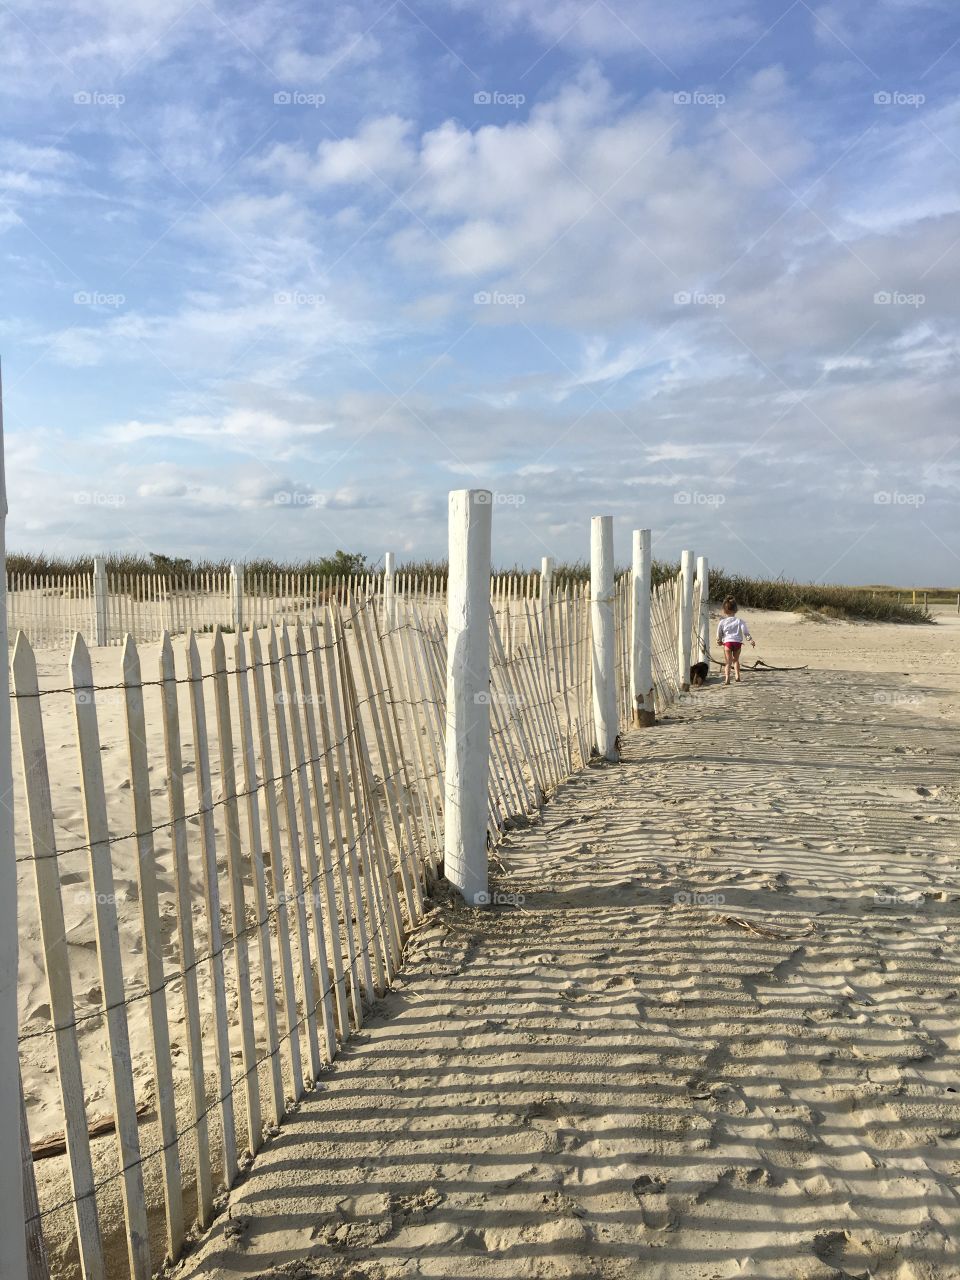 Along the Beach Fence